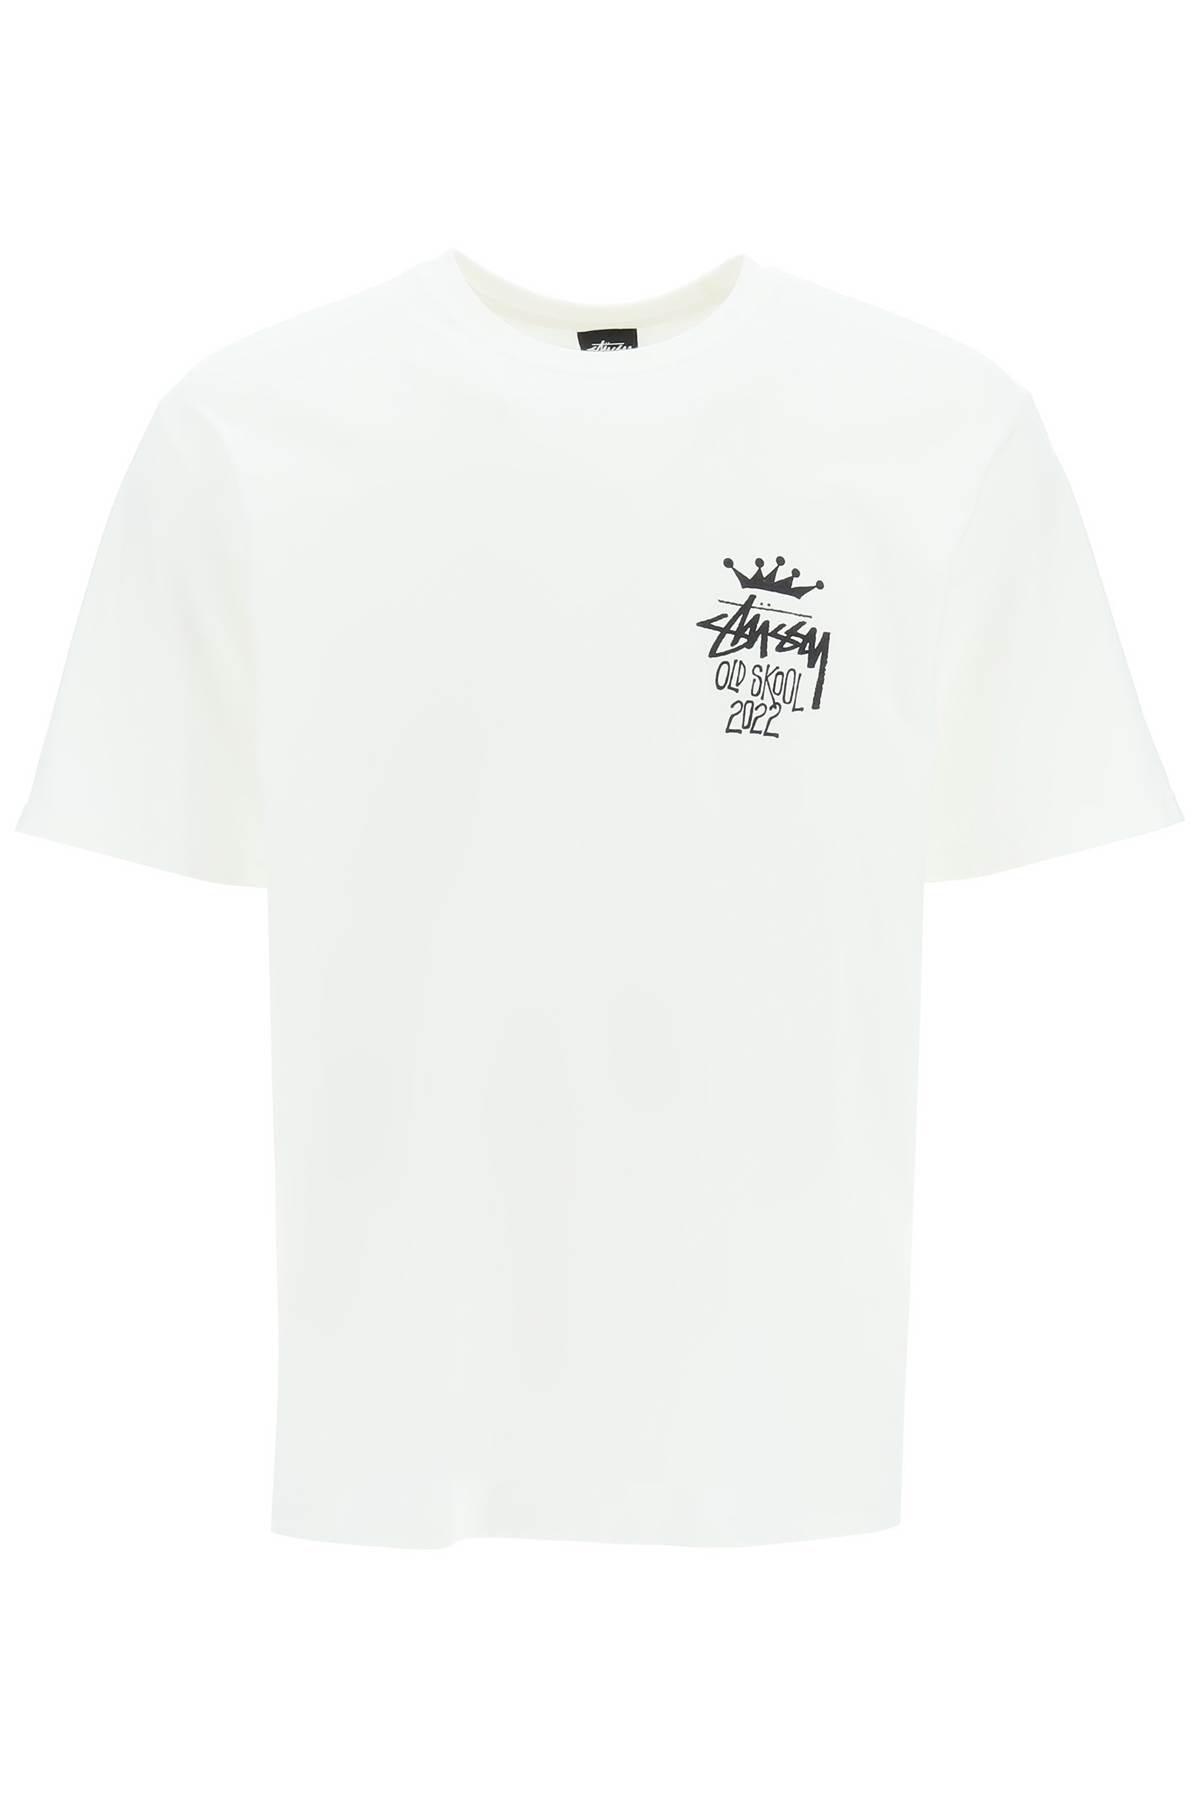 Stussy Old Skool 2022 T-shirt in White for Men | Lyst